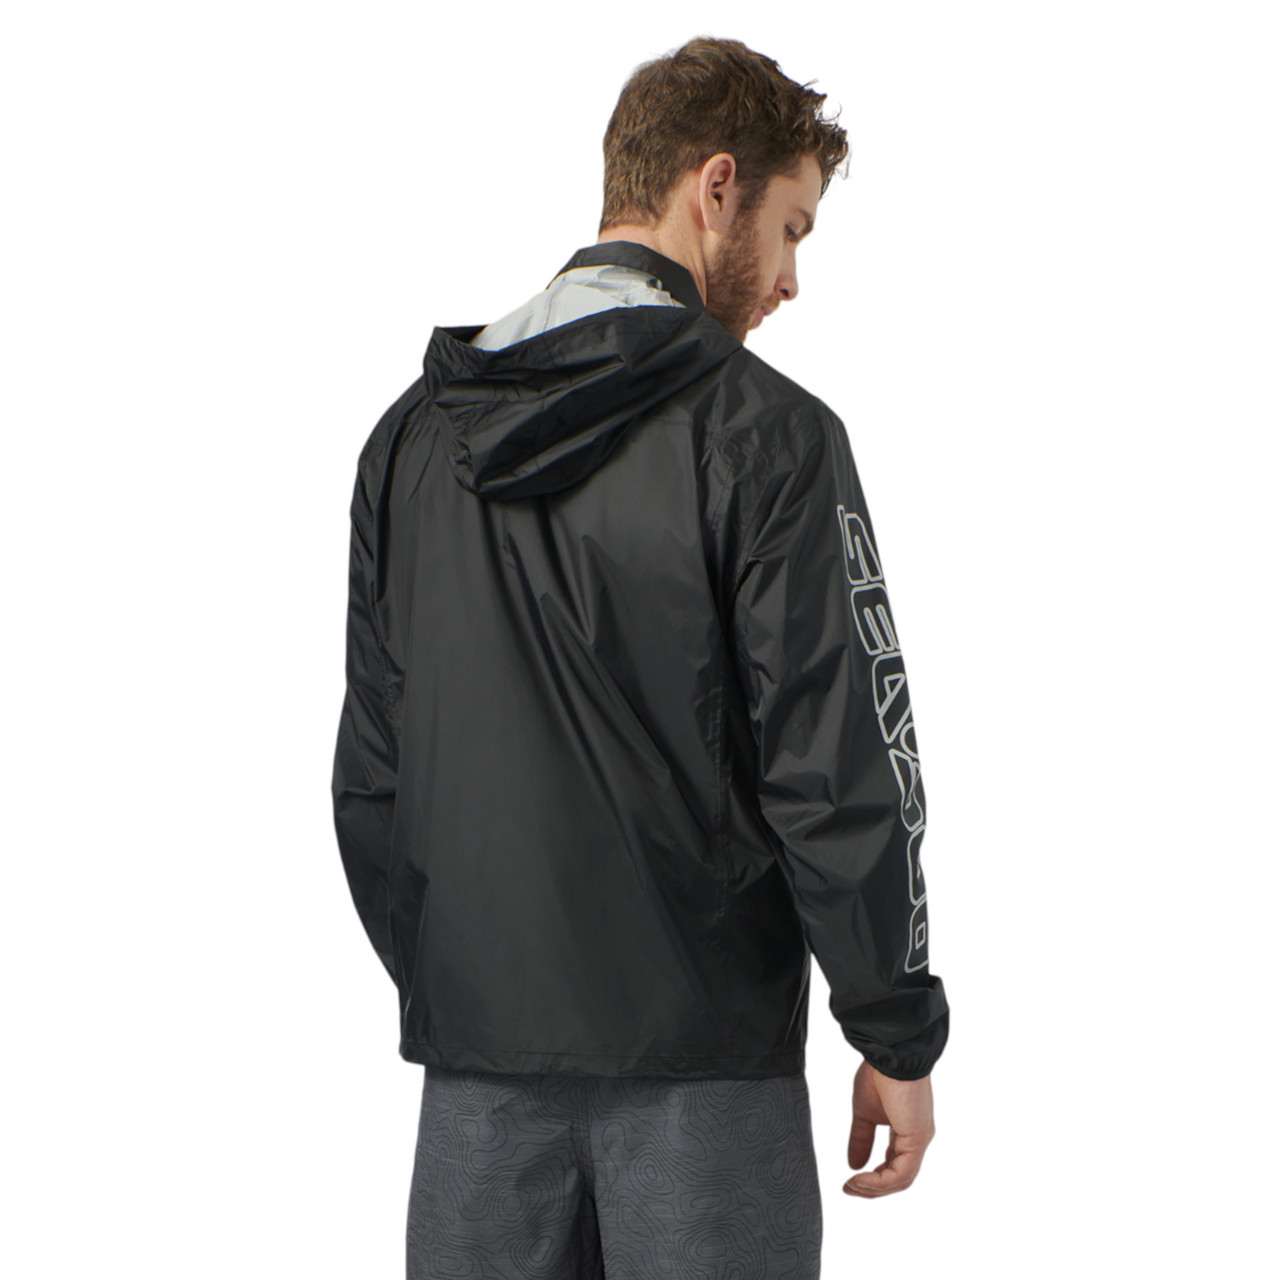 Sea-Doo New OEM, Men's Small Water-Resistant Windproof Jacket, 4547000490